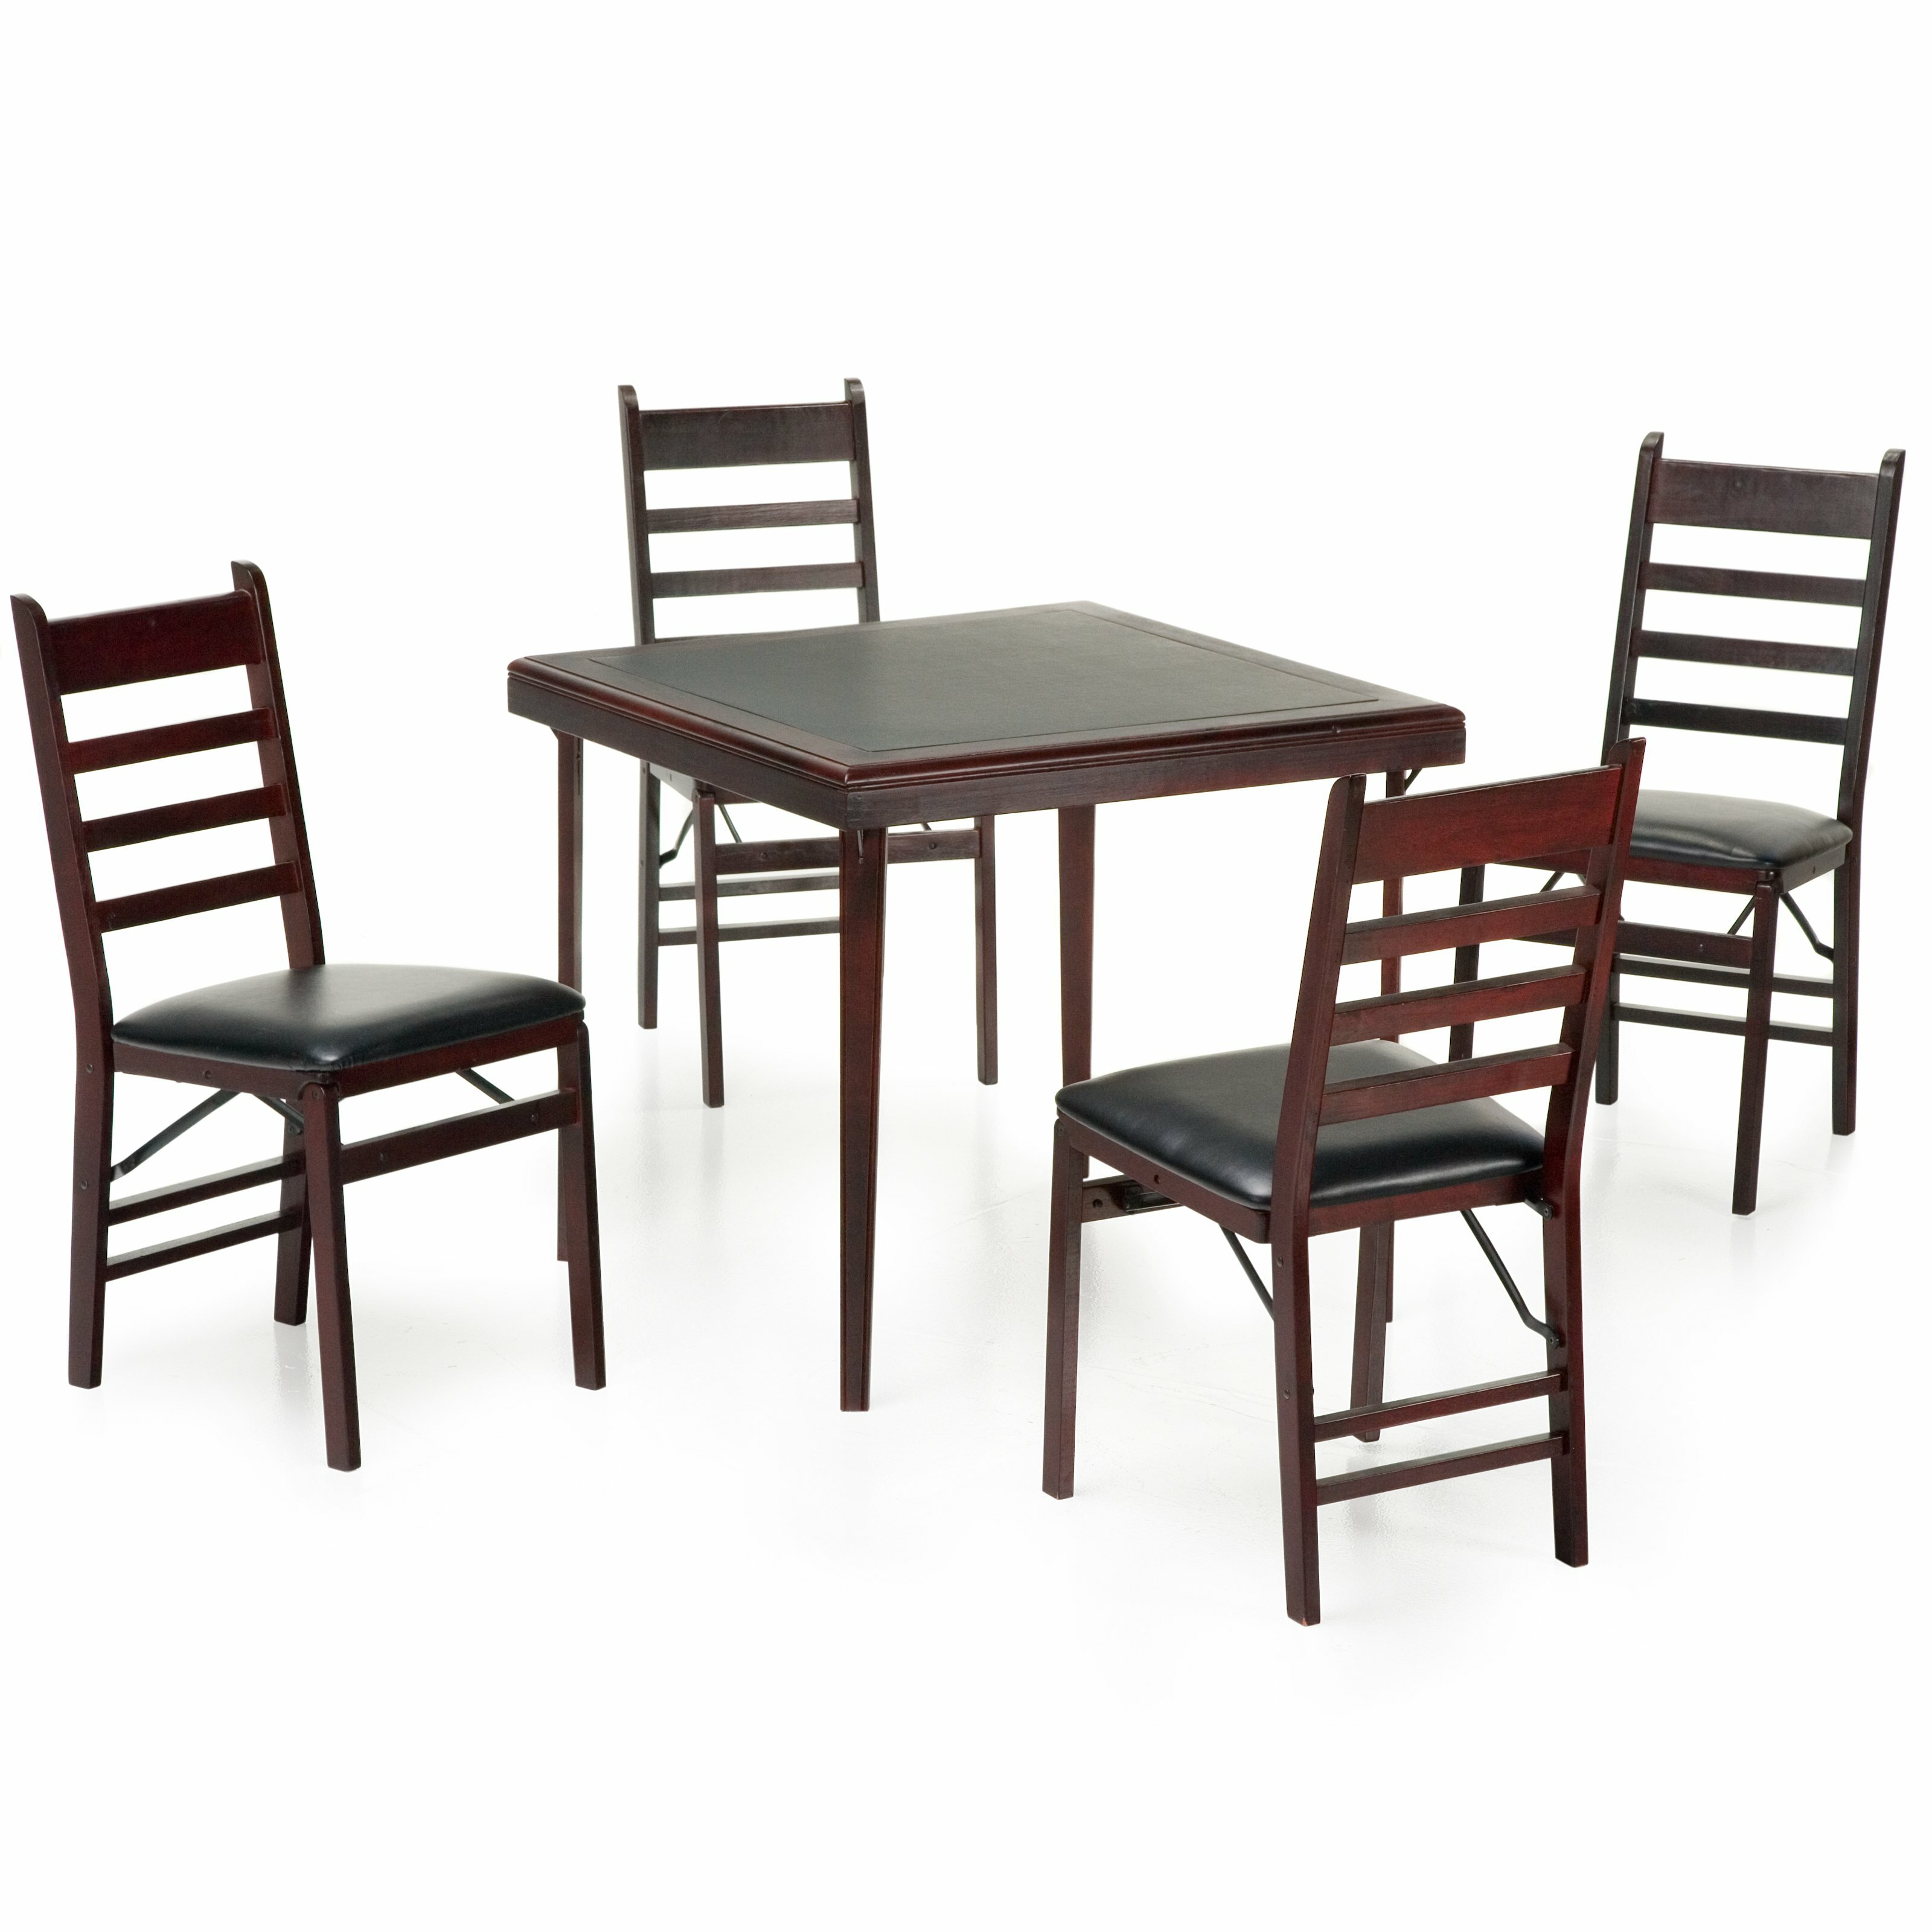 Costco Folding Tables for Unique Portable Table Design Ideas: Round Folding Tables Costco | Utility Table Costco | Costco Folding Tables